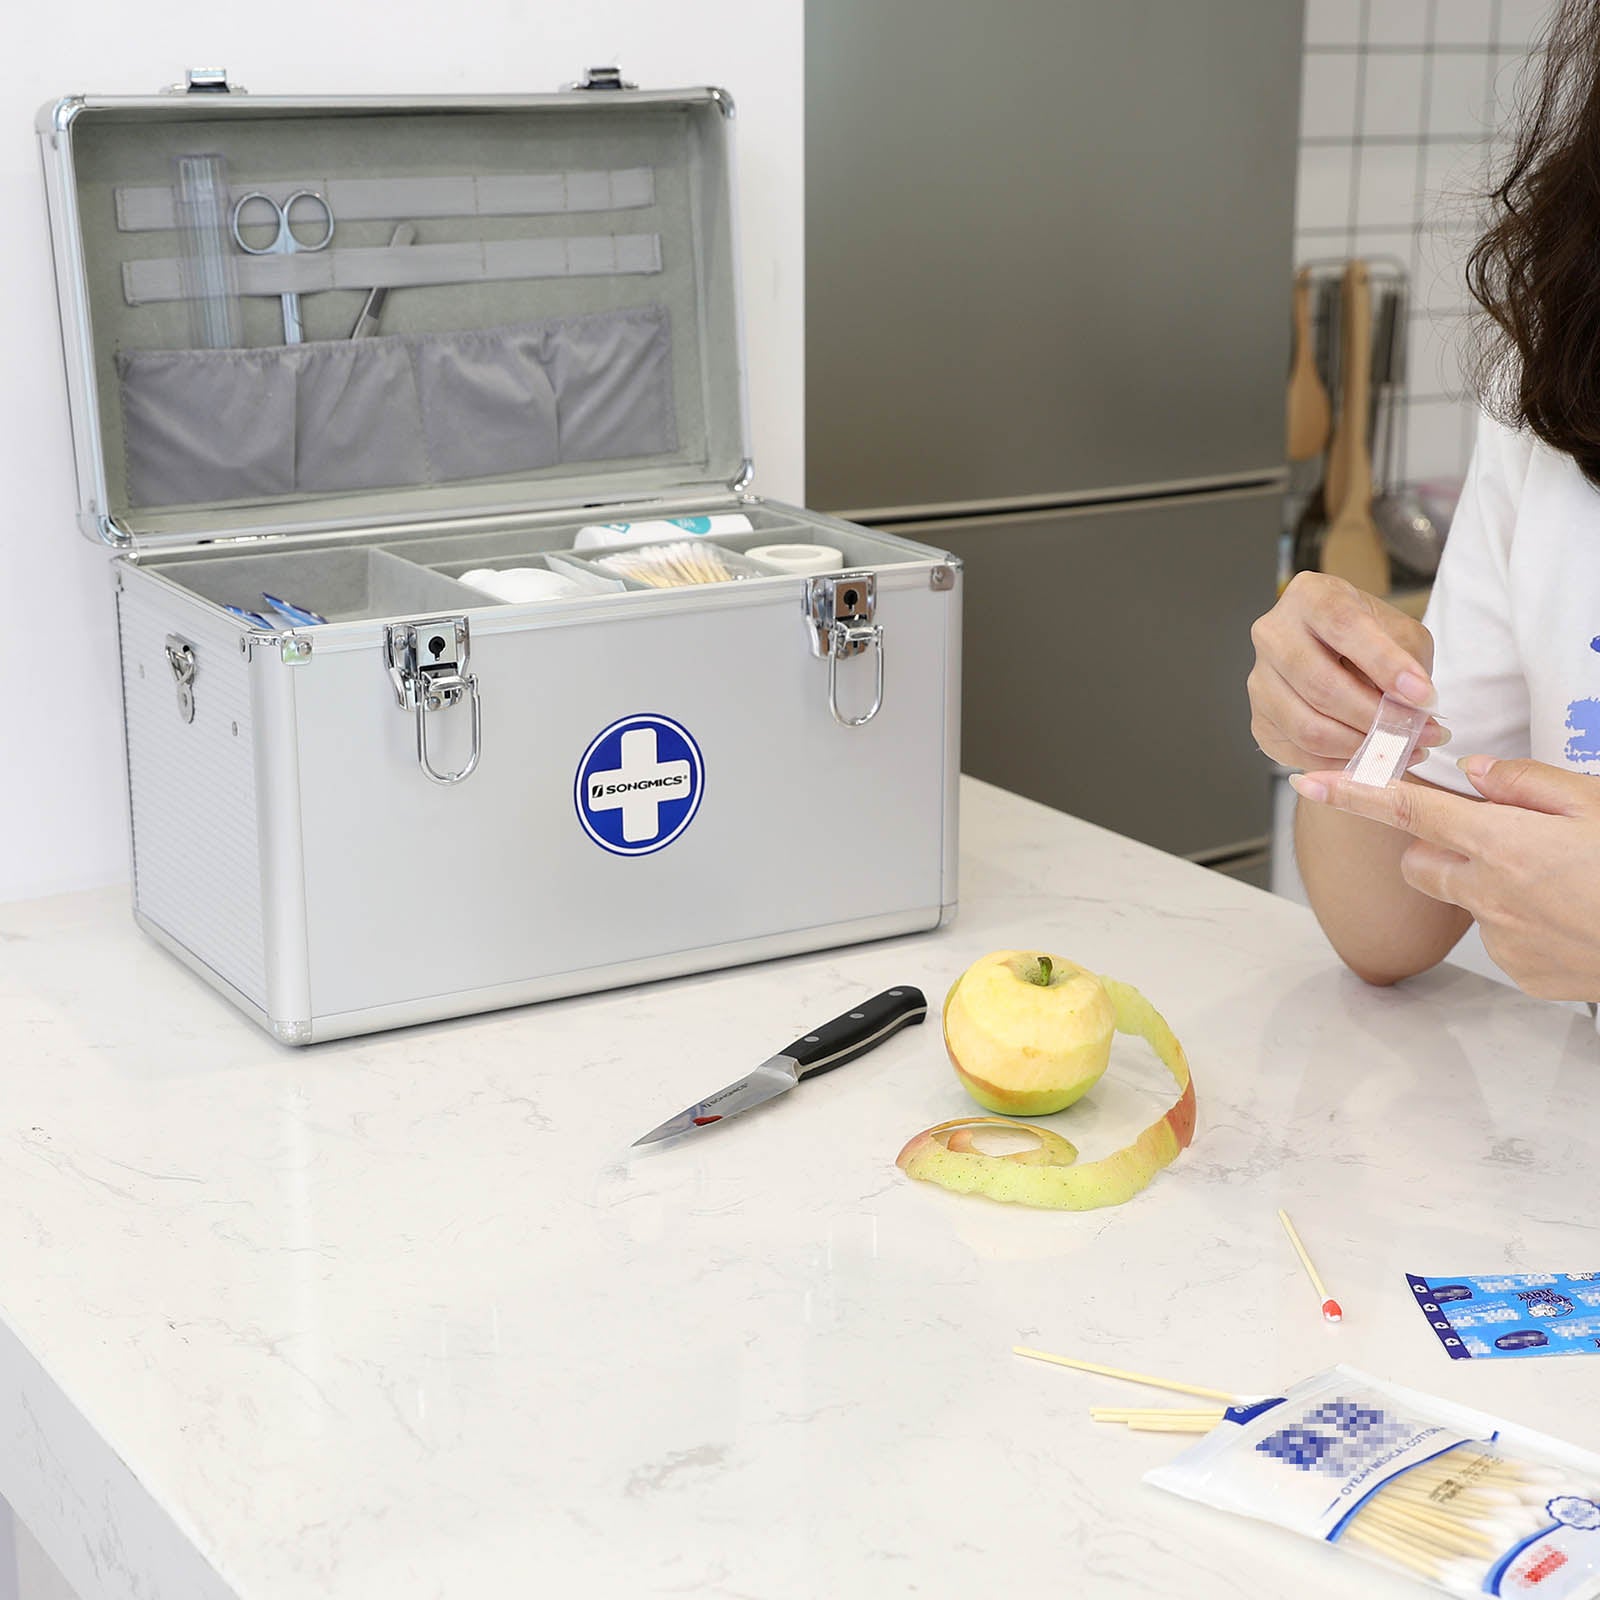 Erste-Hilfe-Koffer Medizin-Box mit Tragegriff Silbern